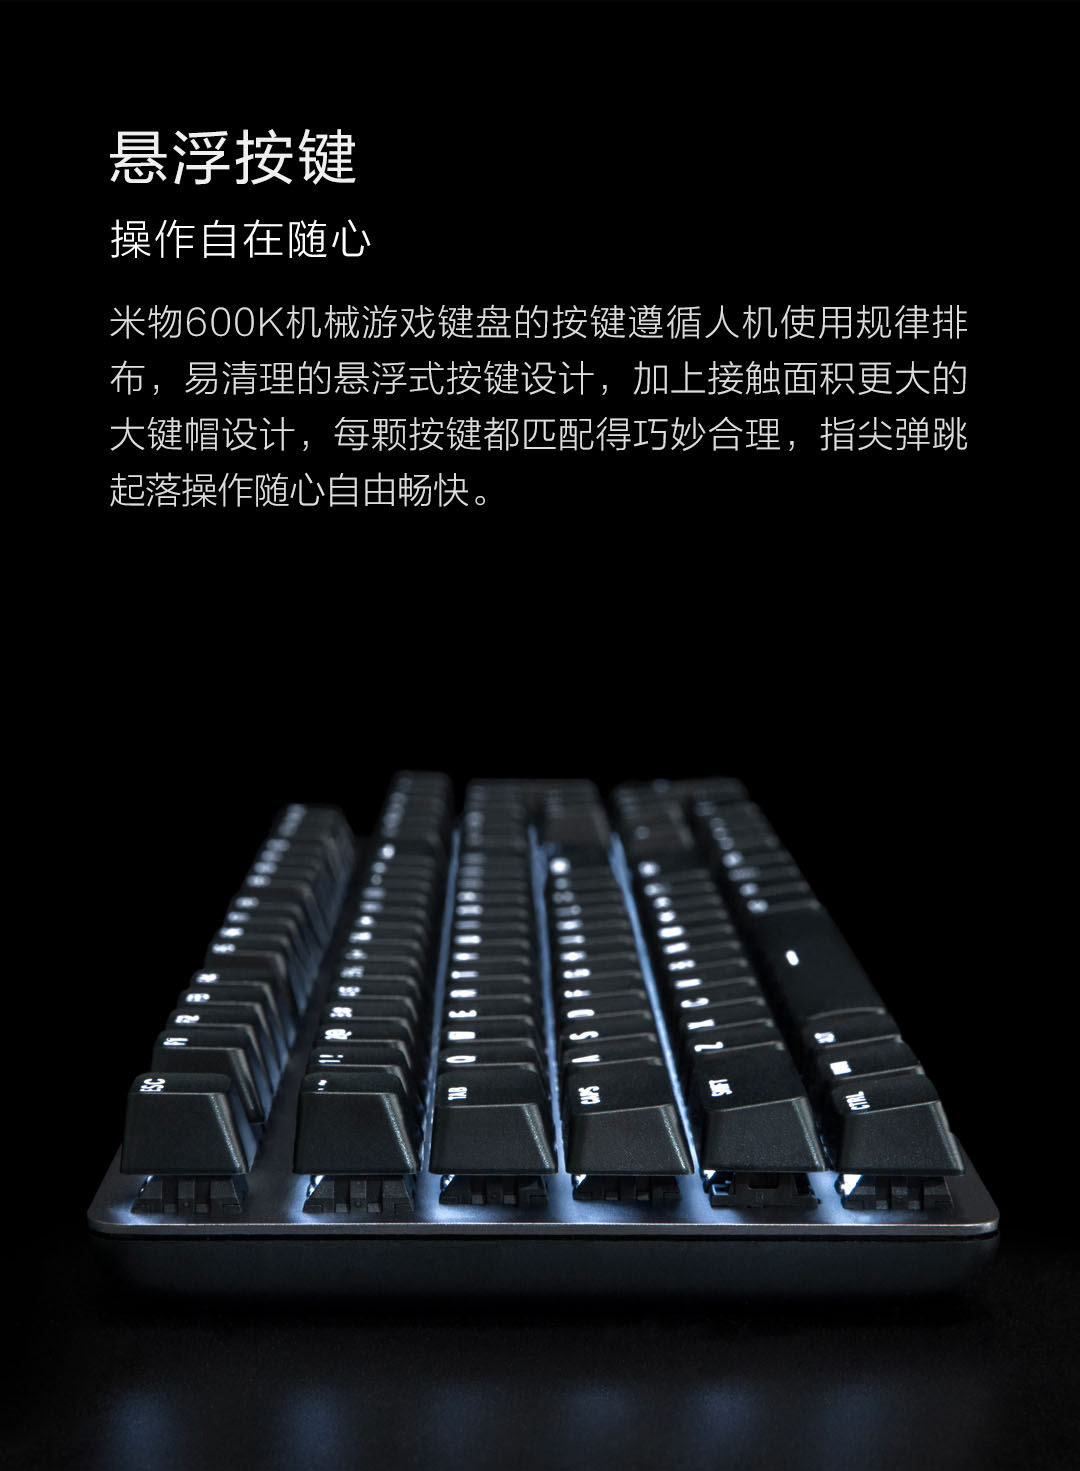 product_奇妙_米物有线机械键盘